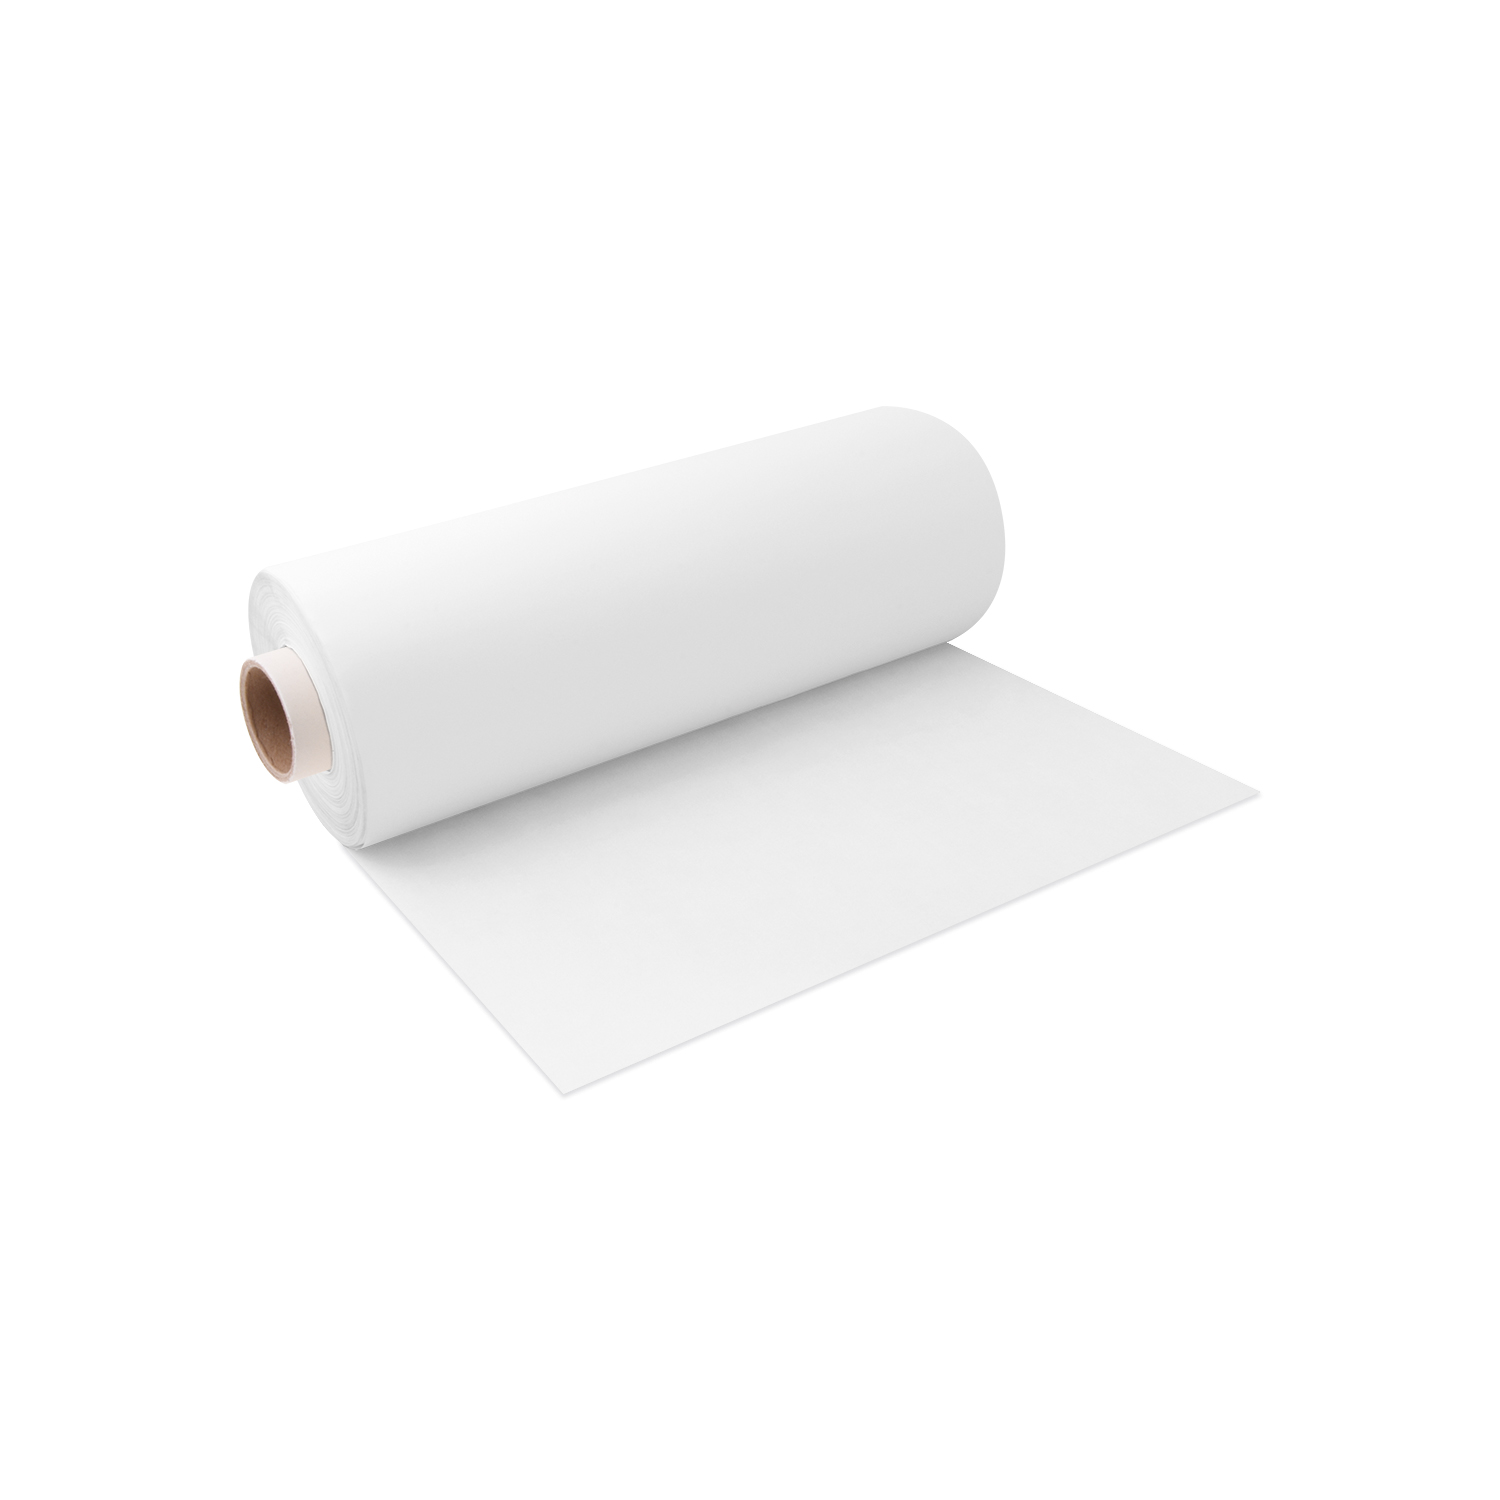 Backpapier gerollt weiß 38cm x 200m - 1 Stück